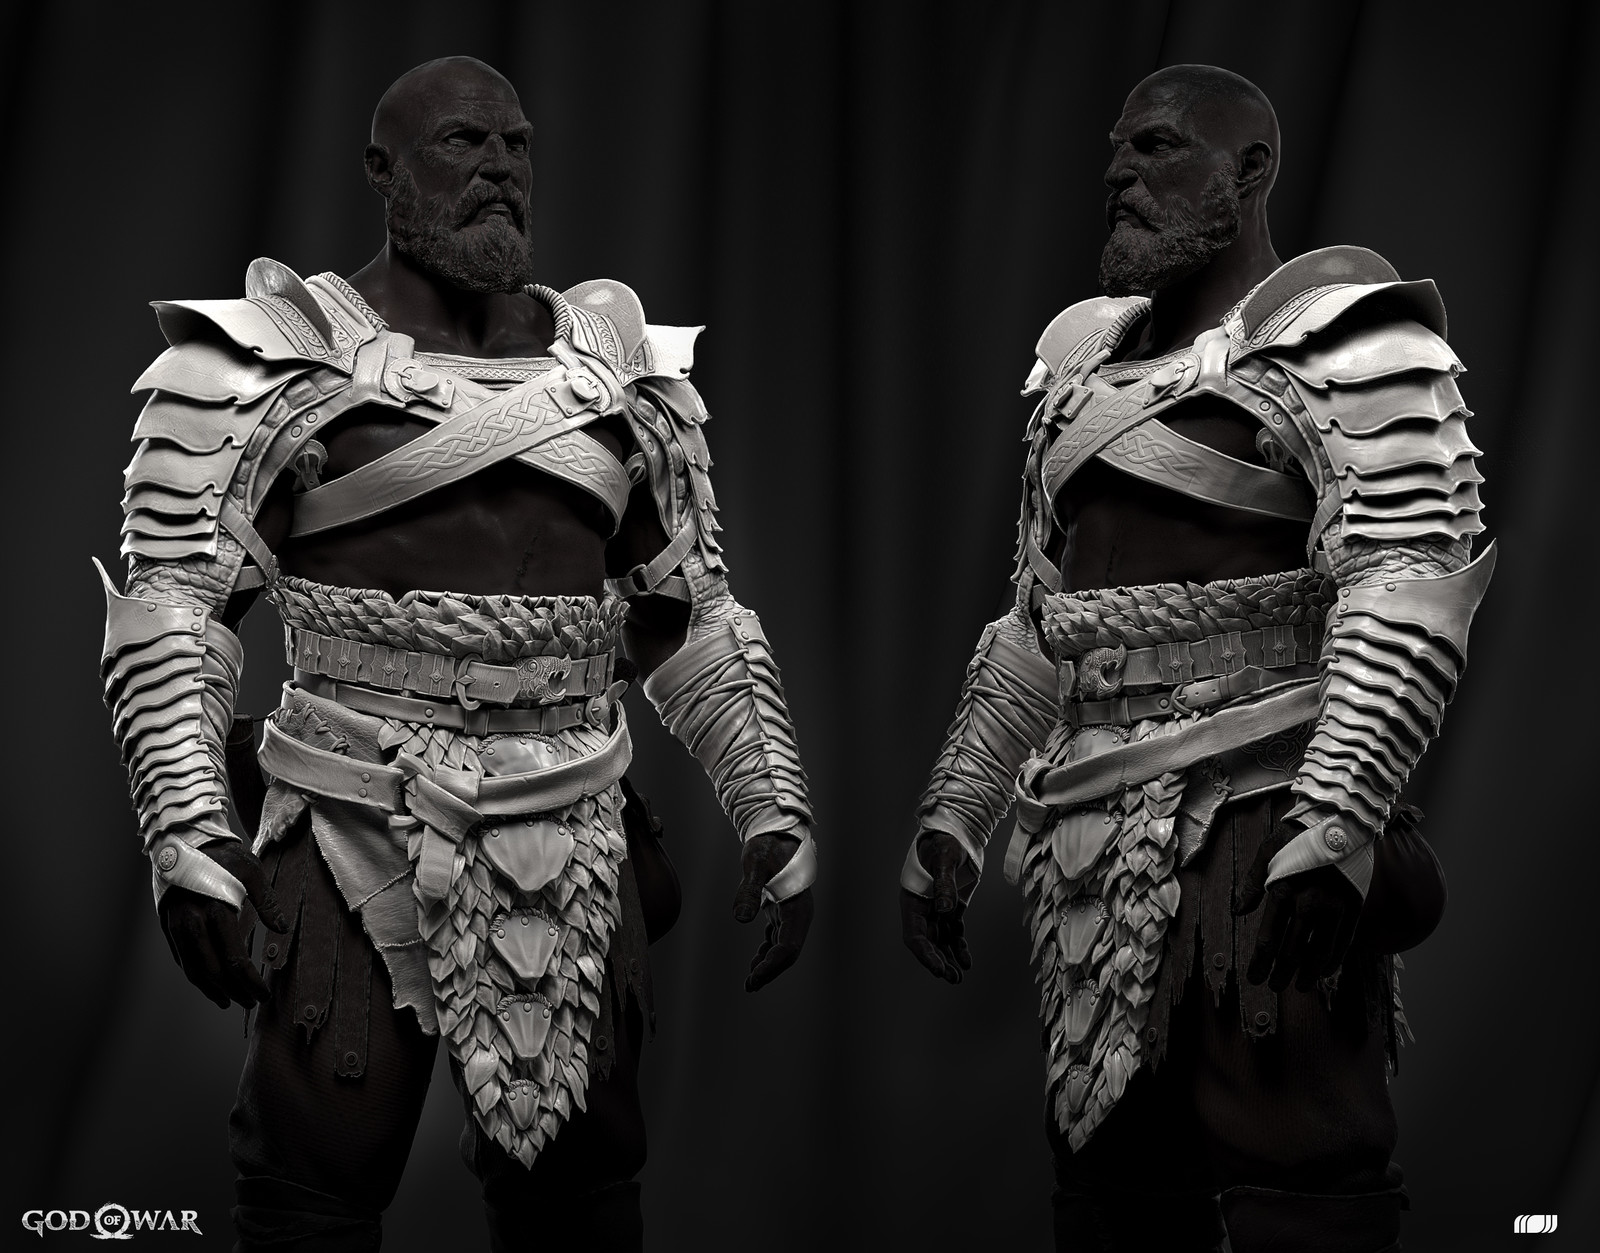 Kratos armor upgrades
Concept by Jose Cabrera